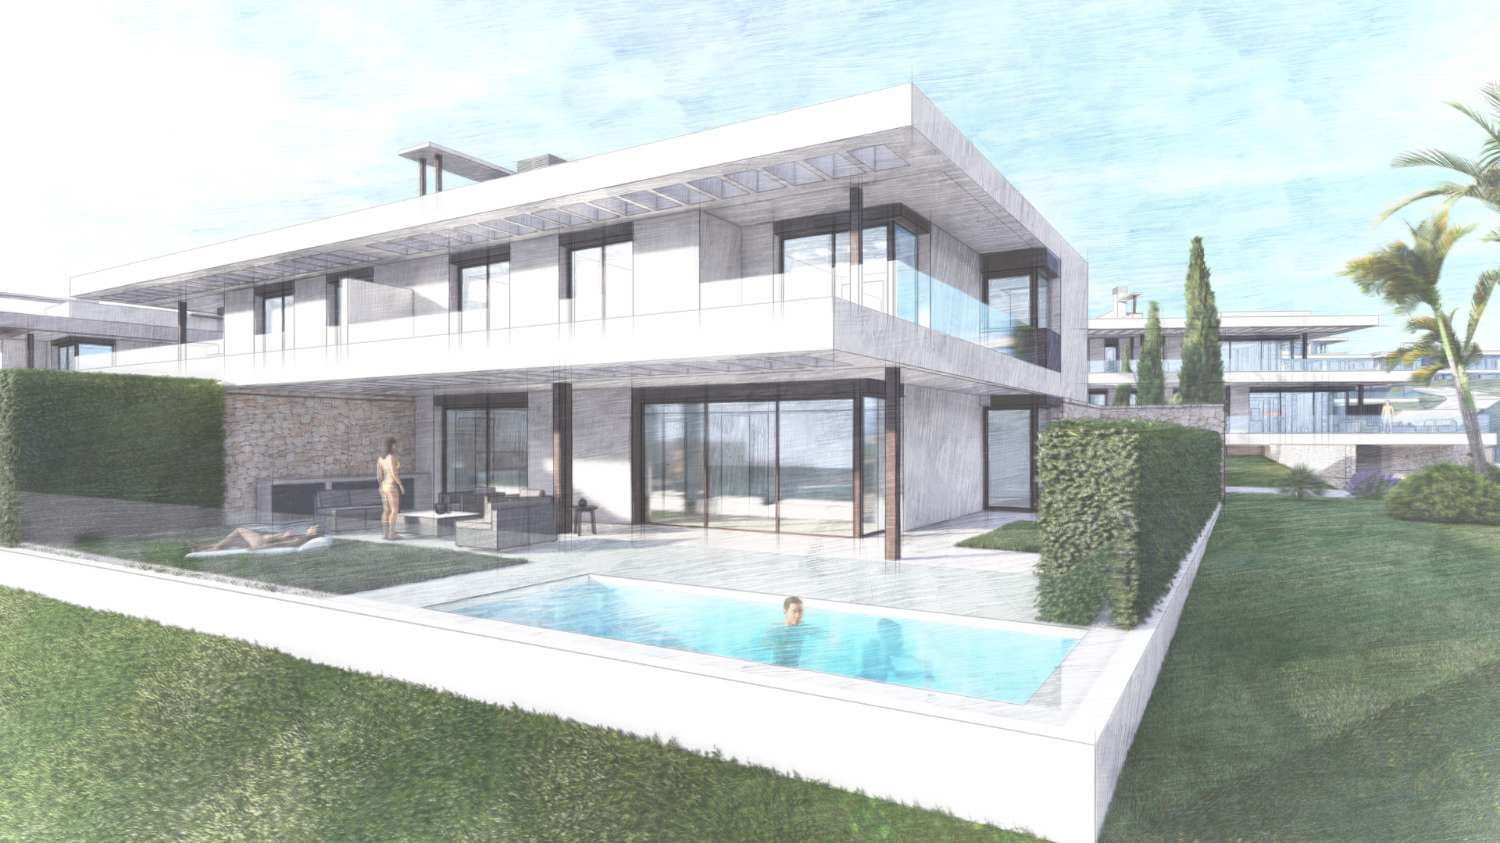 Exklusive Villa in Marbella mit 4 Schlafzimmern in Urbanisation mit Sicherheit.